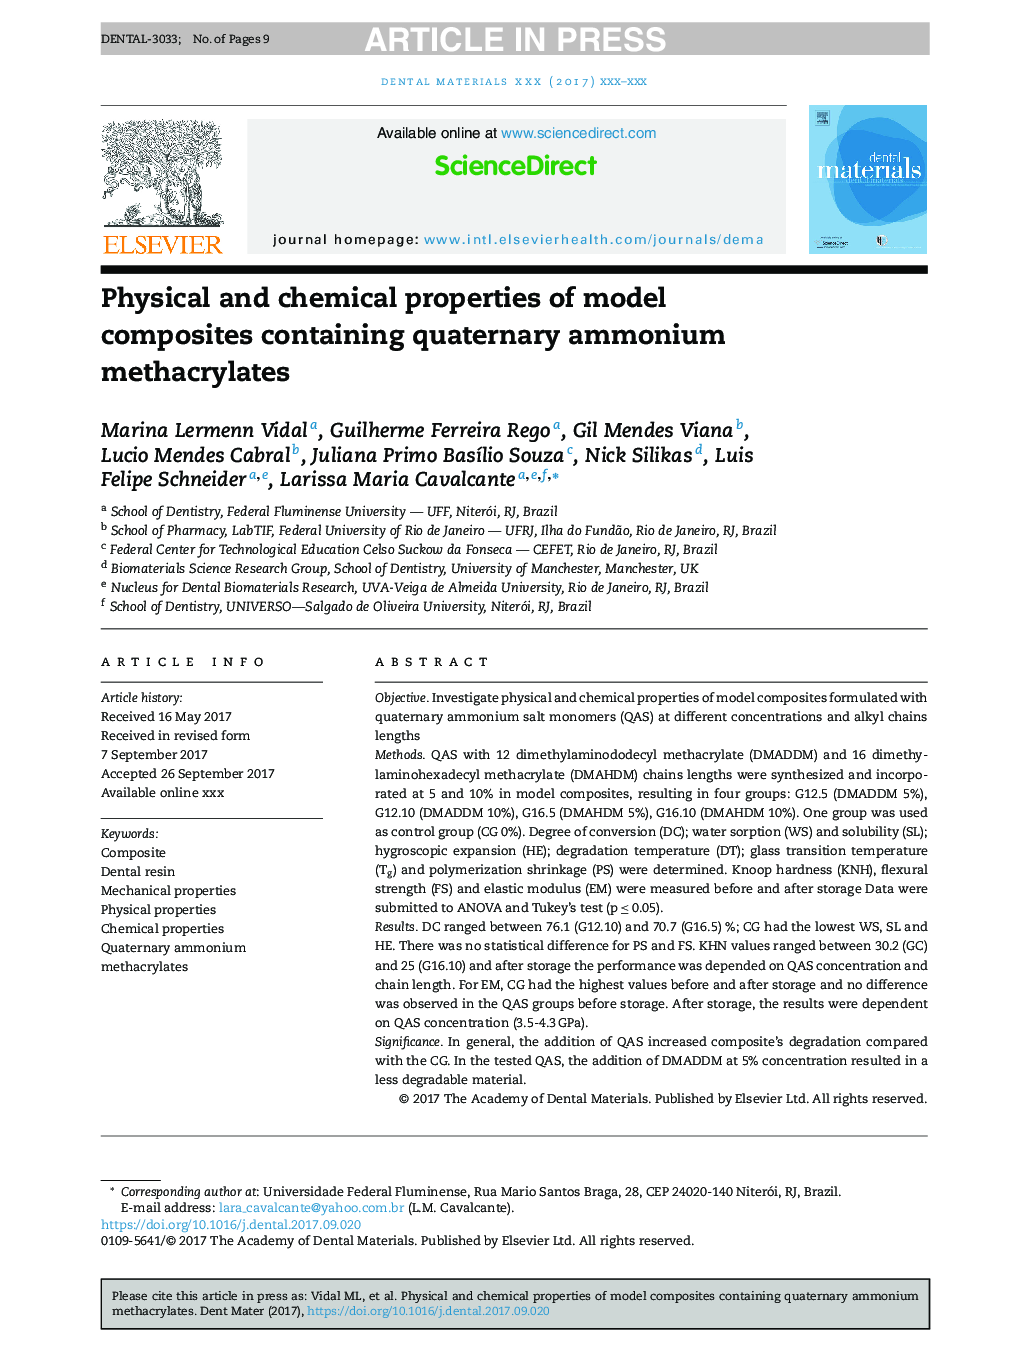 خواص فیزیکی و شیمیایی کامپوزیت های مدل که شامل متاکریلات آمونیوم کواترنری است 